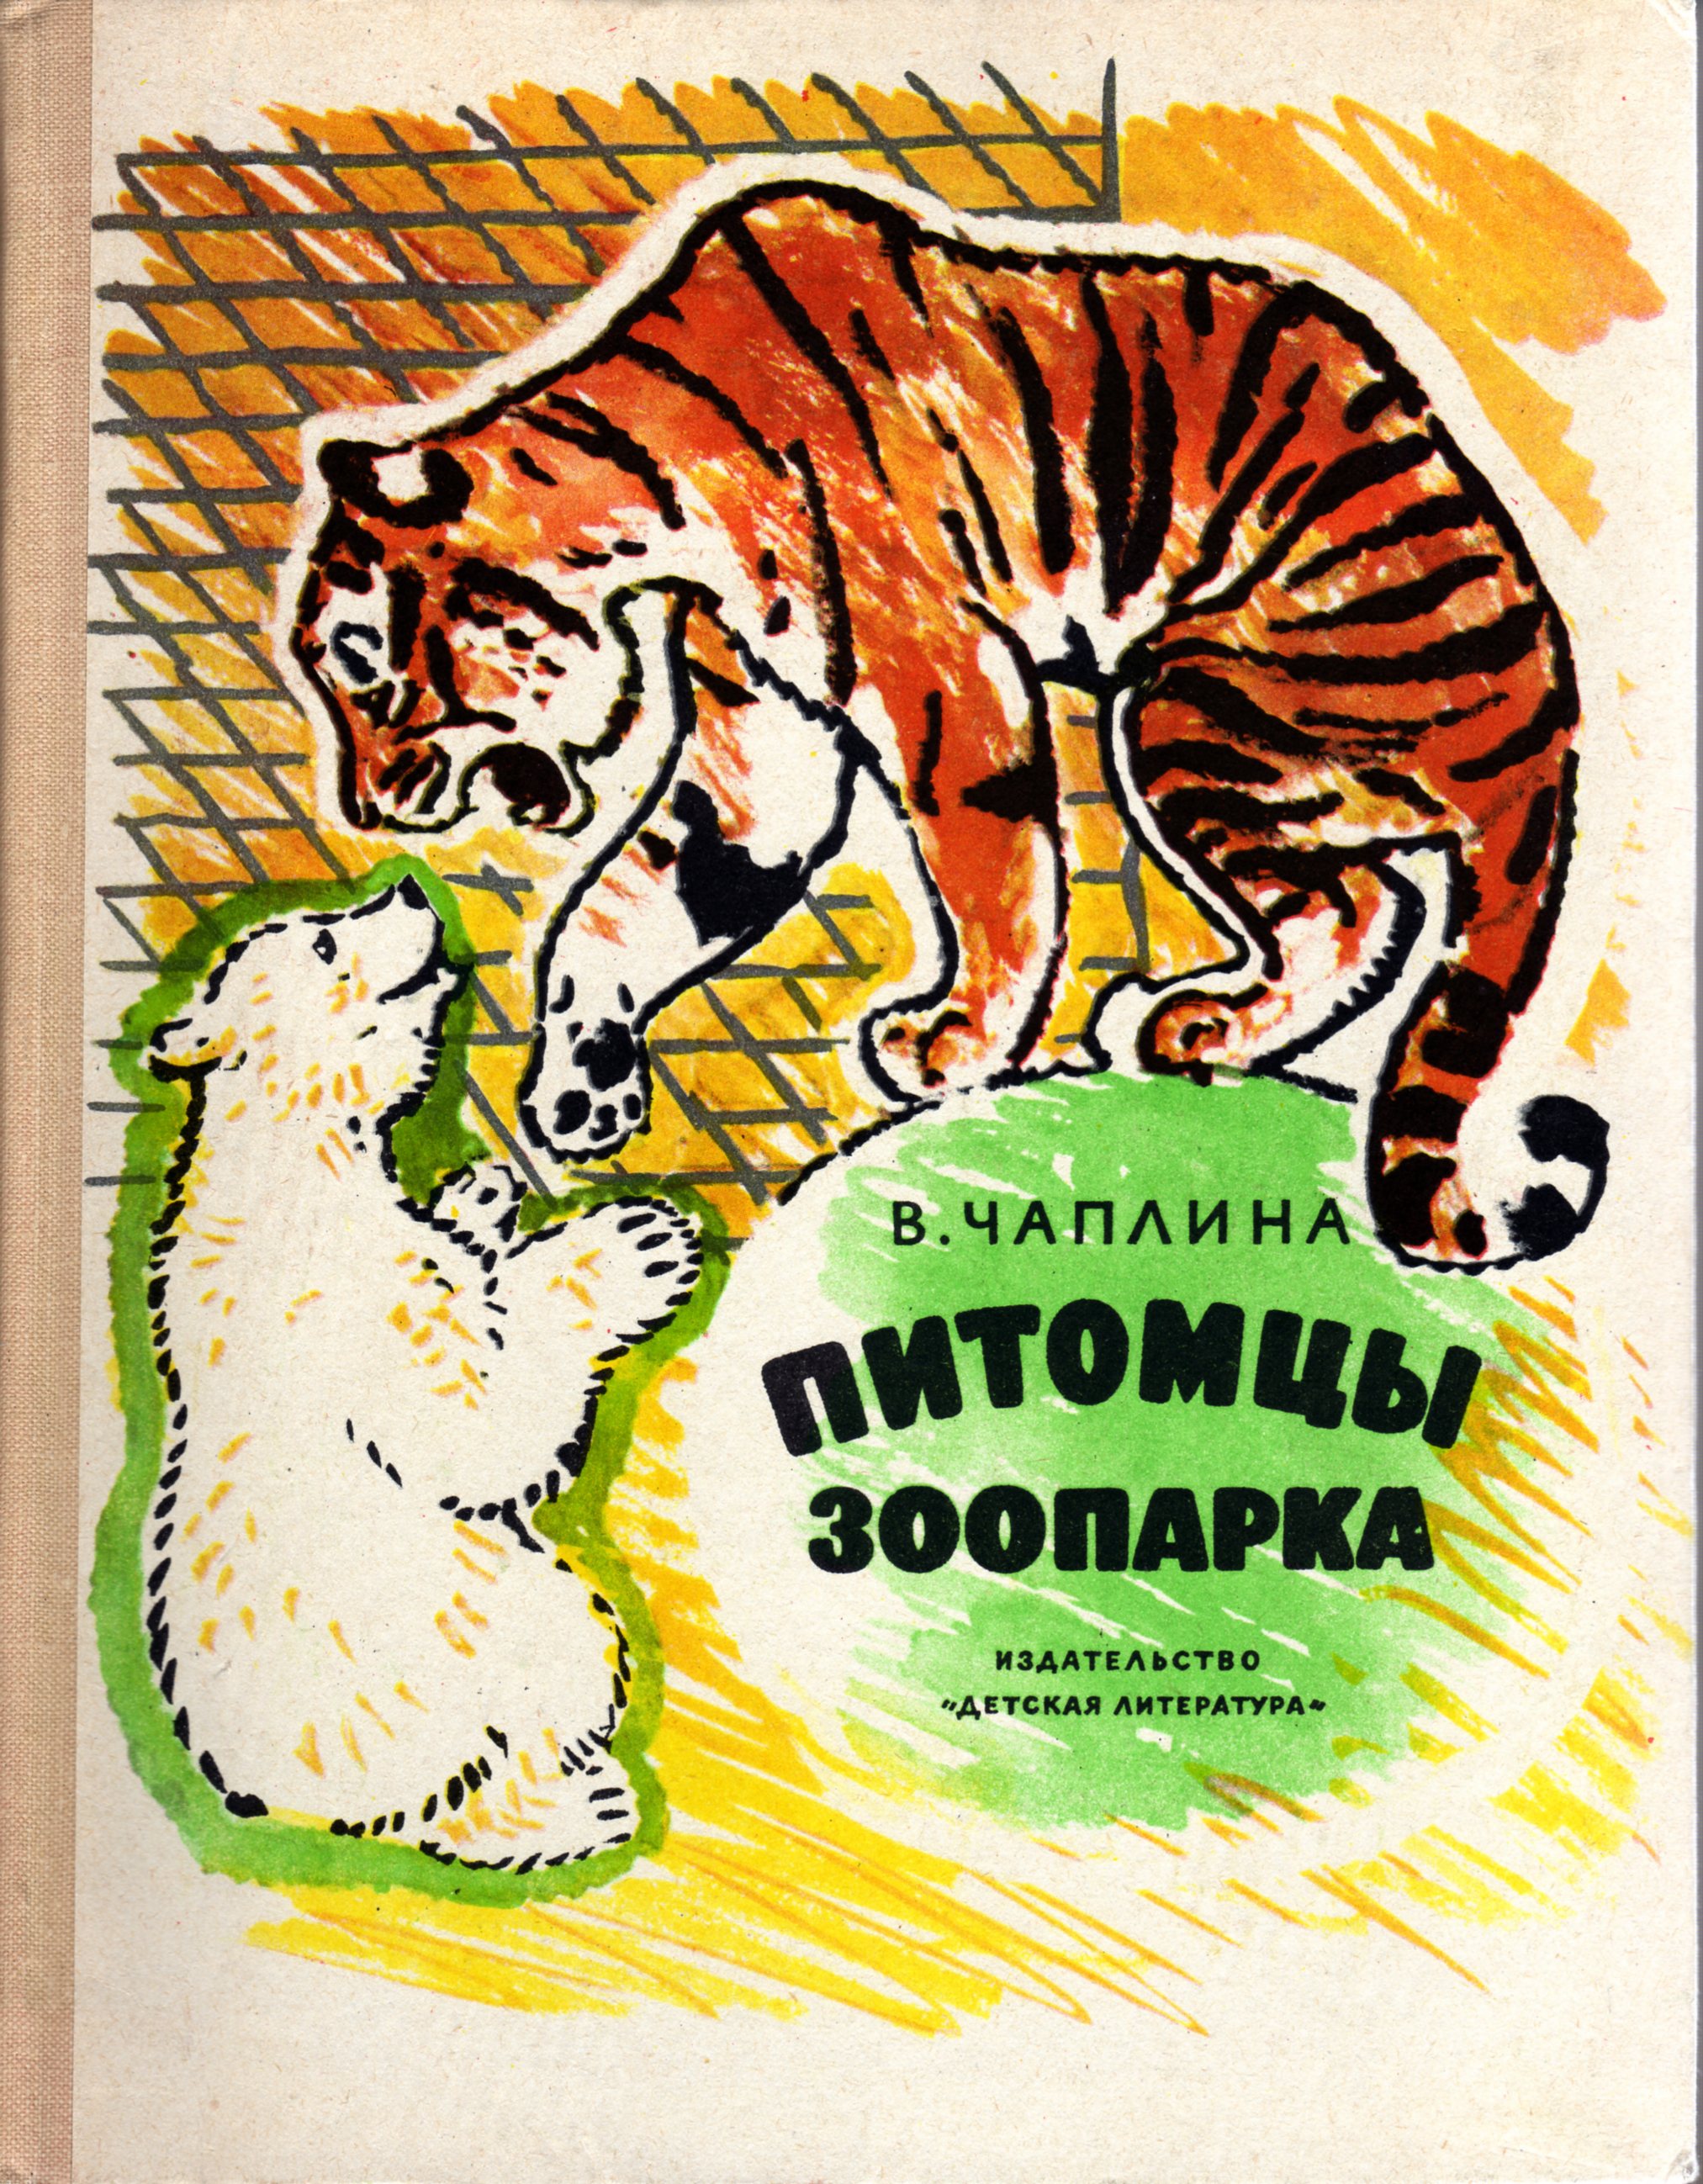 Обложка Питомцы зоопарка 1965г